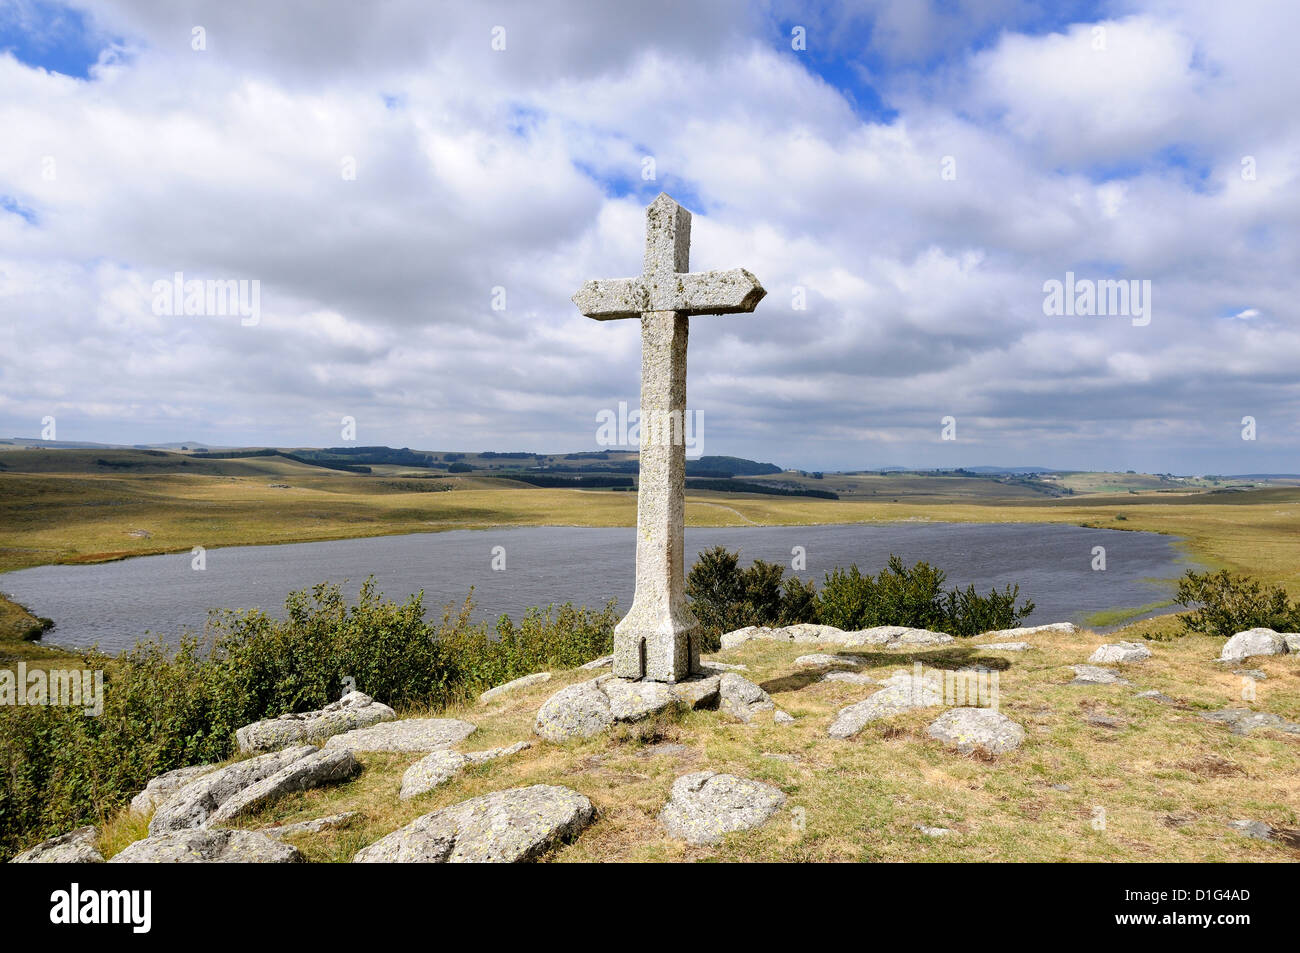 Croce di st andeol lago sul cammino di san Giacomo in Lozère, Aubrac, Francia, Europa - Percorso del pellegrinaggio a Santiago de Compostela Foto Stock